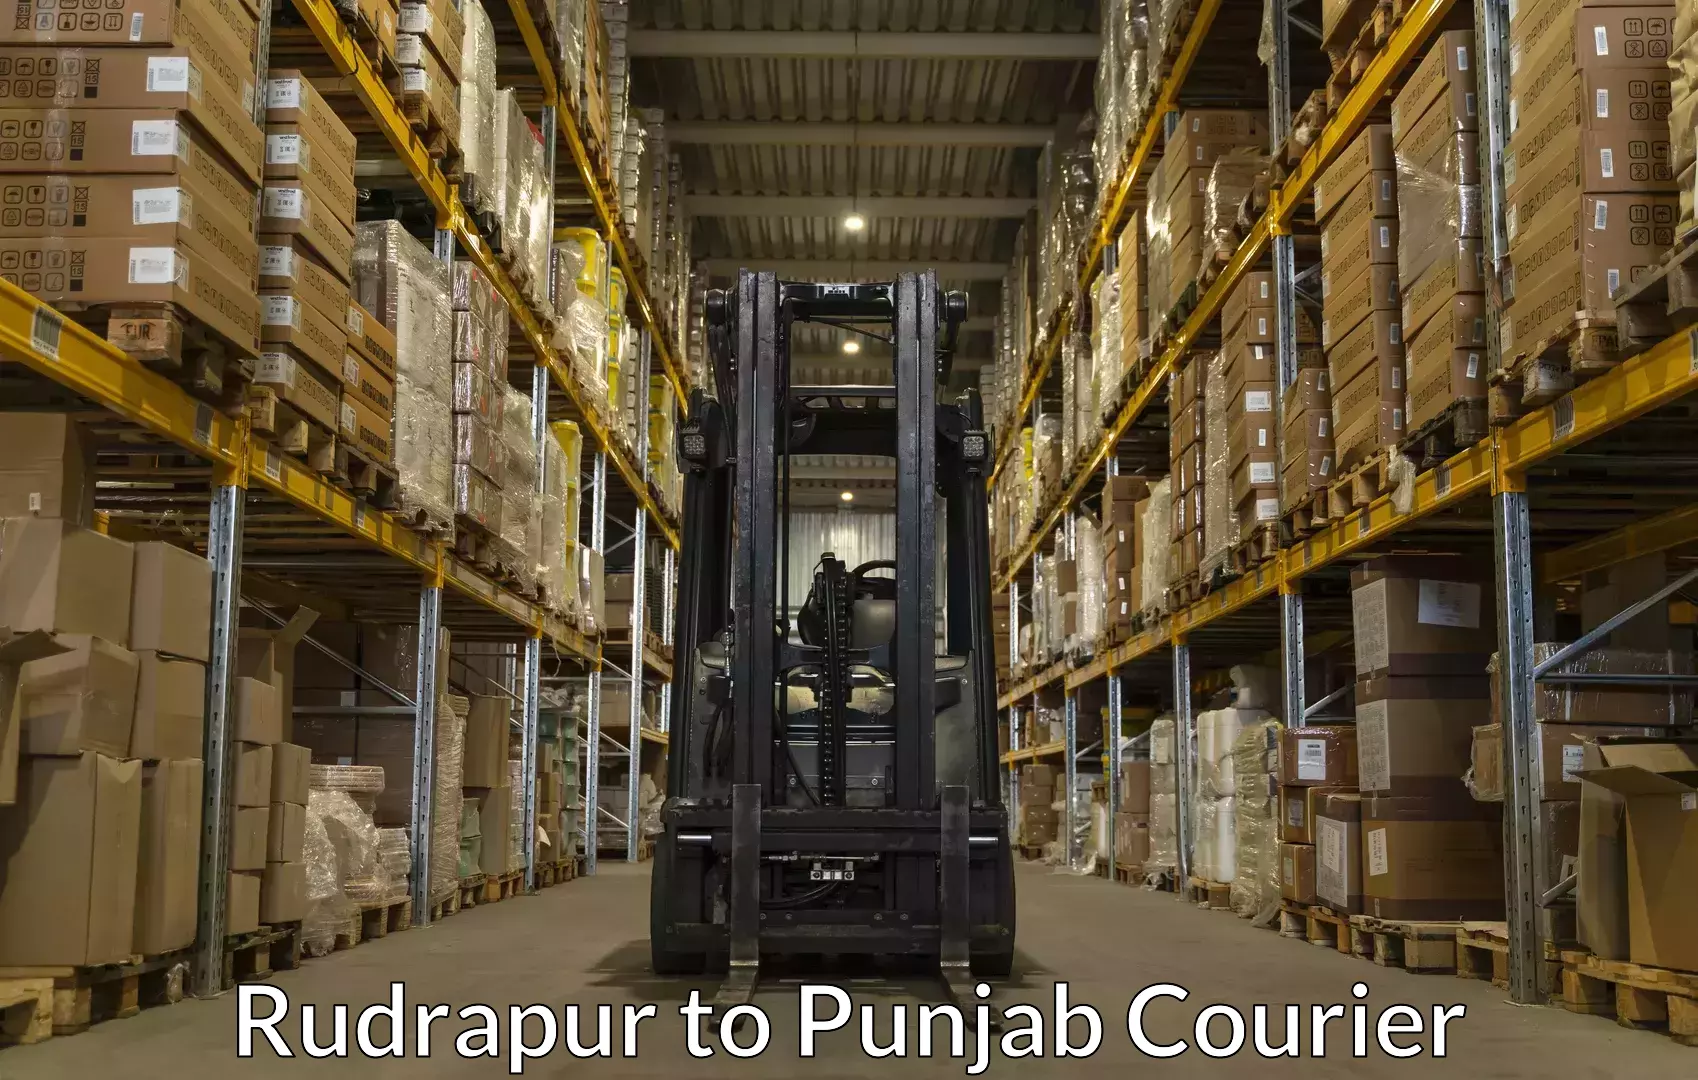 Baggage transport updates Rudrapur to Punjab